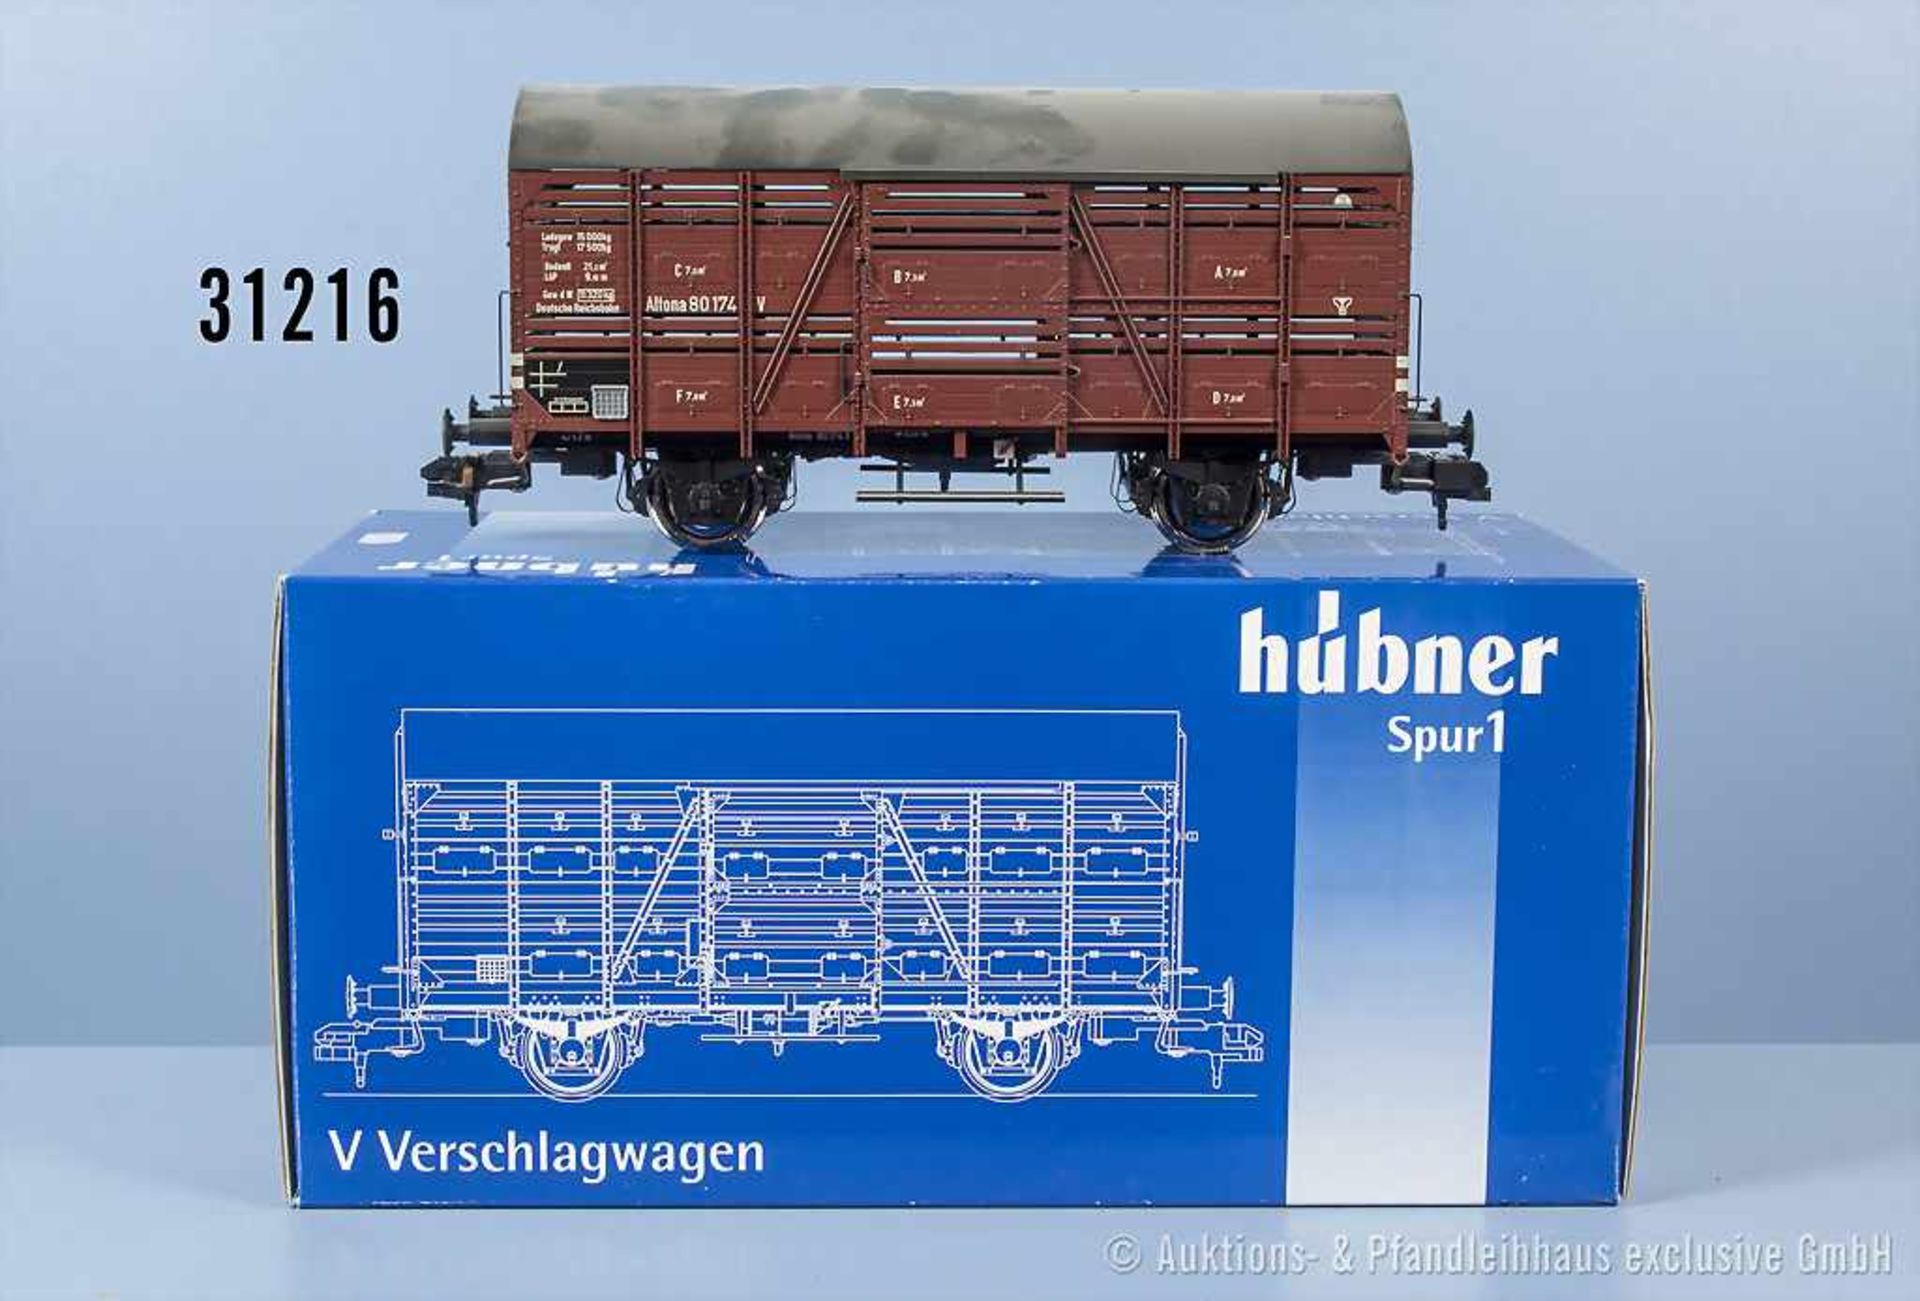 Hübner Spur 1 20471 c Verschlagwagen, Zustand 1, in OVP, verschmutzt, OVP mit Lagerspuren- - -19.